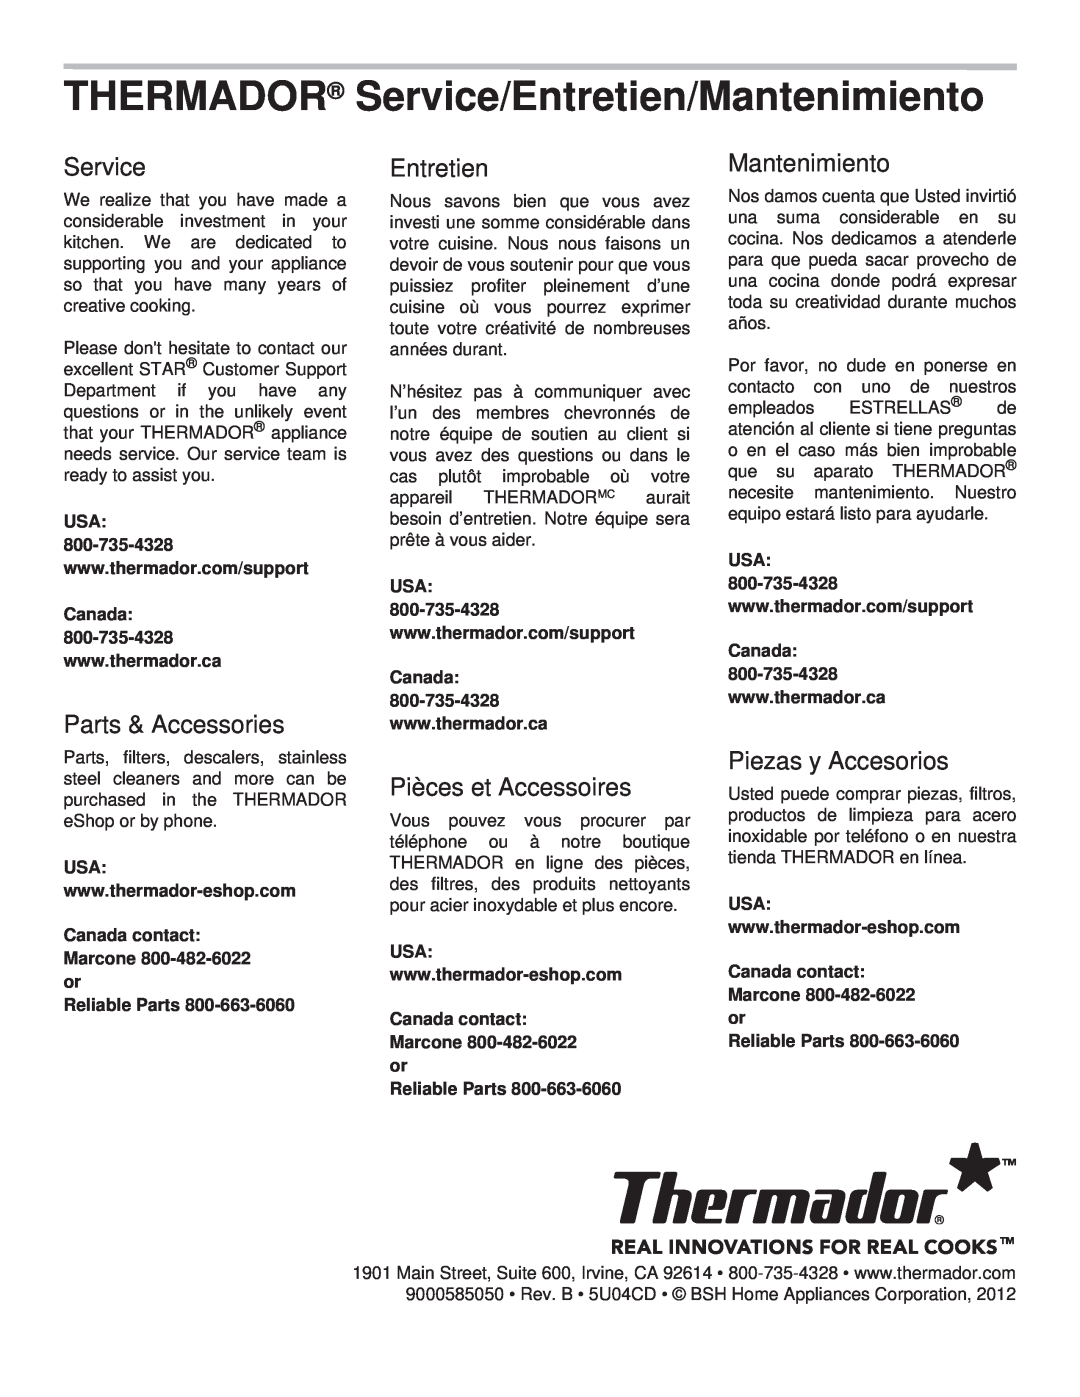 Thermador PCG30, PCG36 THERMADOR Service/Entretien/Mantenimiento, Canada contact: Marcone 800-482-6022or, Reliable Parts 